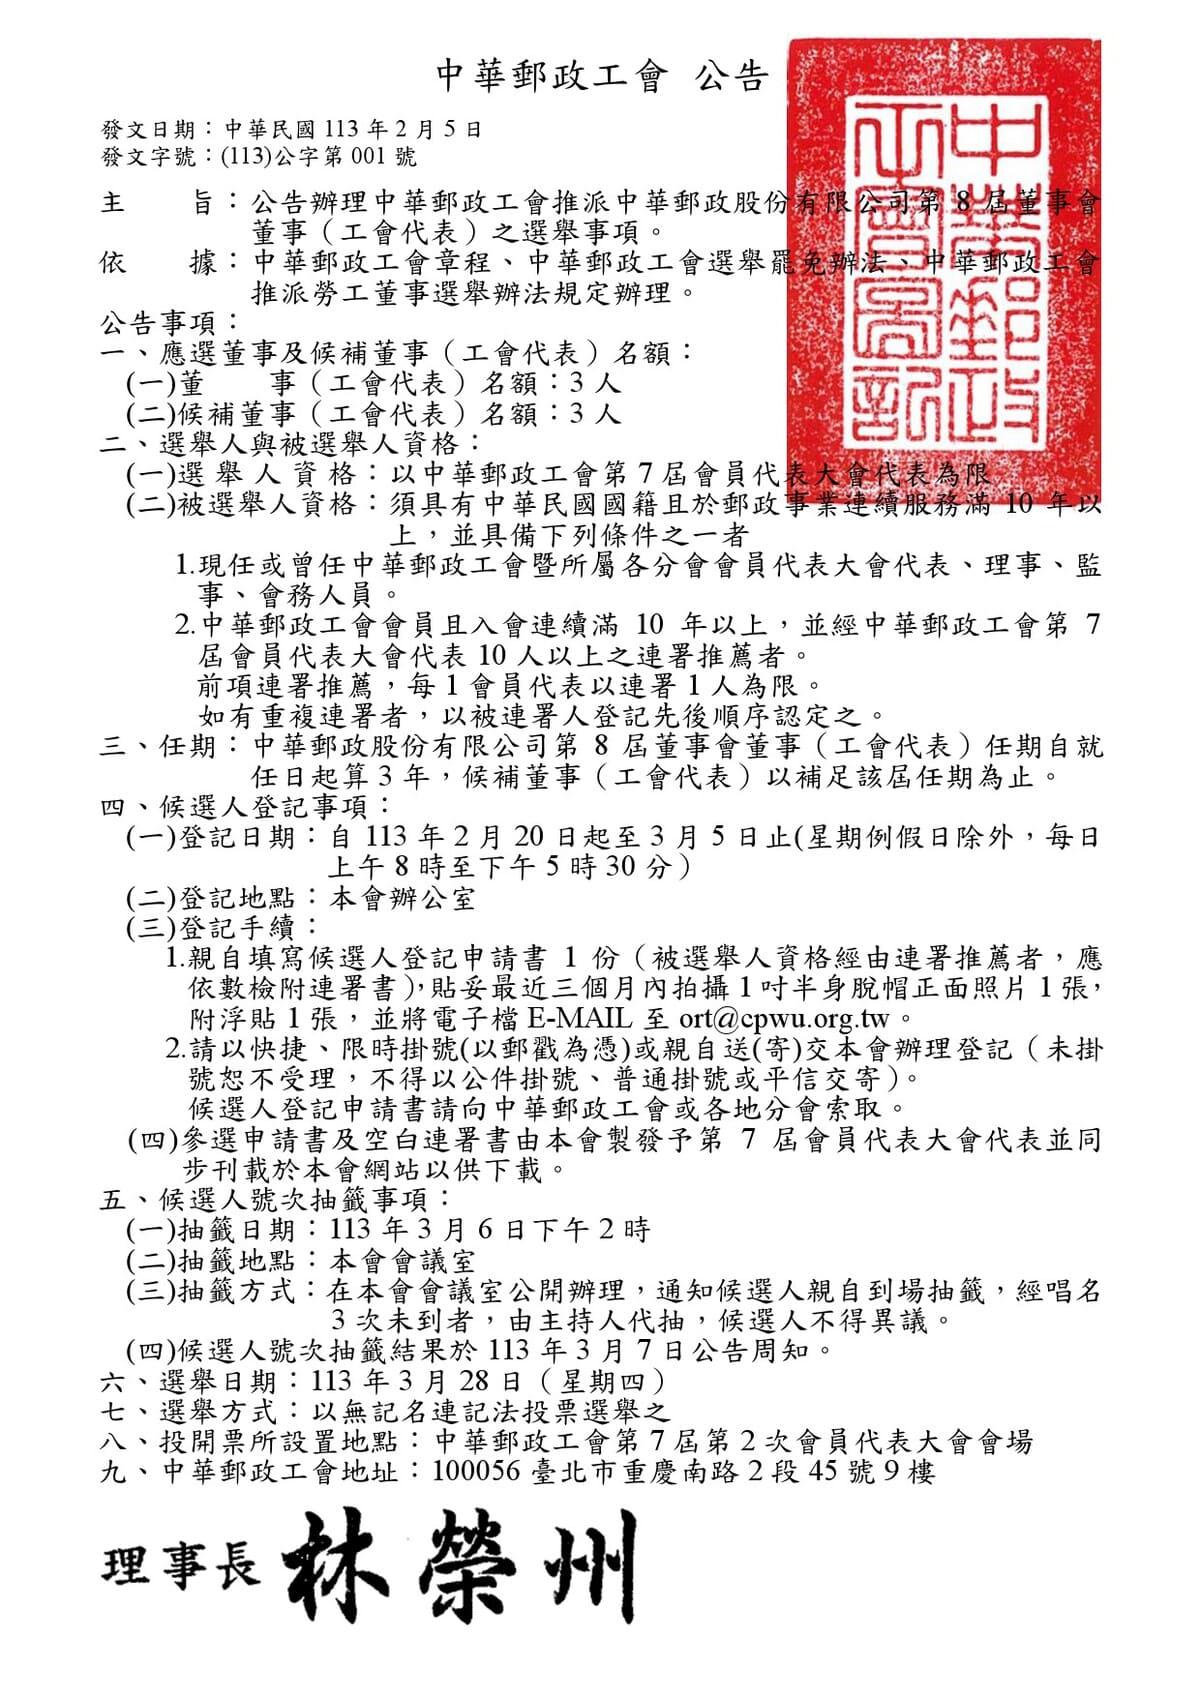 本會推派中華郵政股份有限公司第8屆董事會董事(工會代表)選舉公告